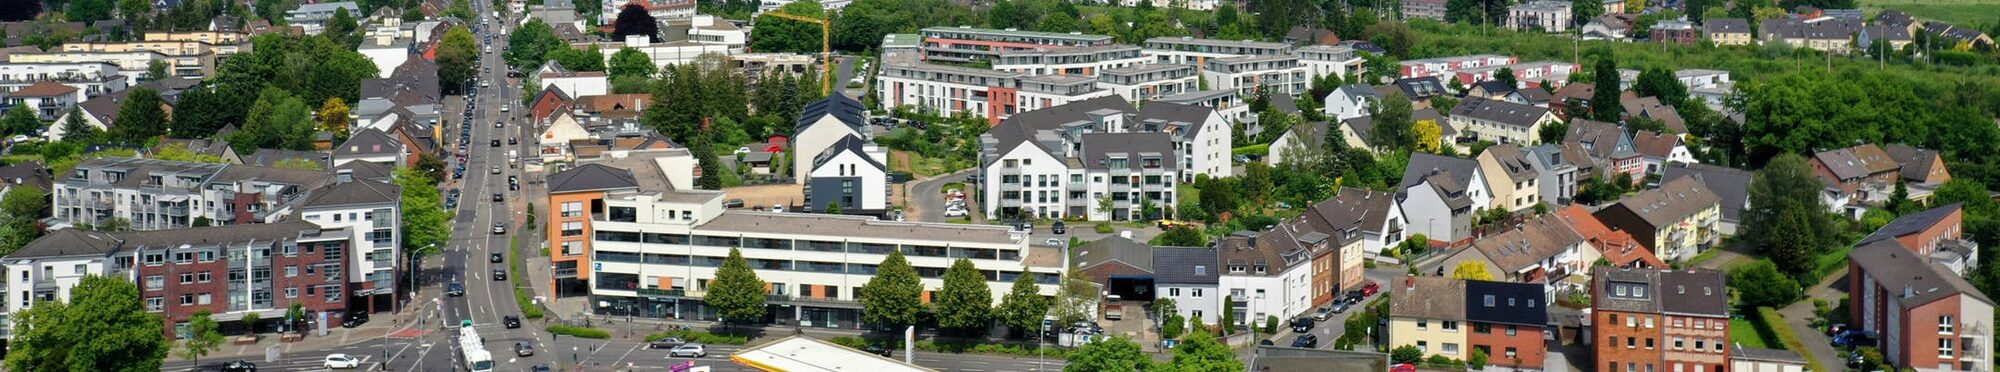 Luftbild Blick von der Luxemburger Straße Richtung Köln.